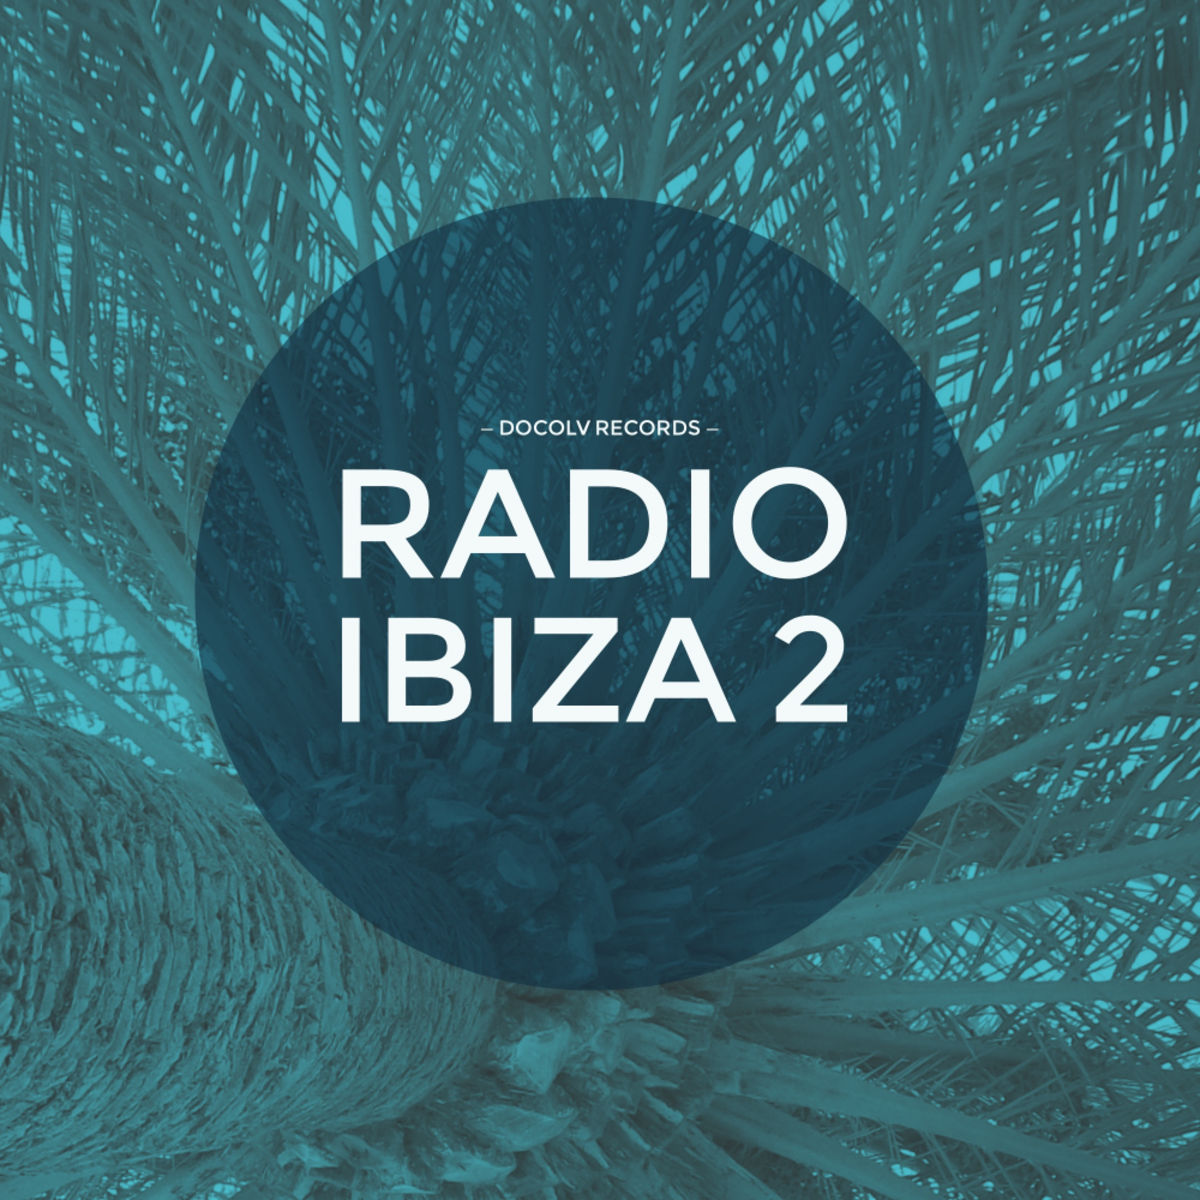 VA - Radio Ibiza 2 / Docolv Records